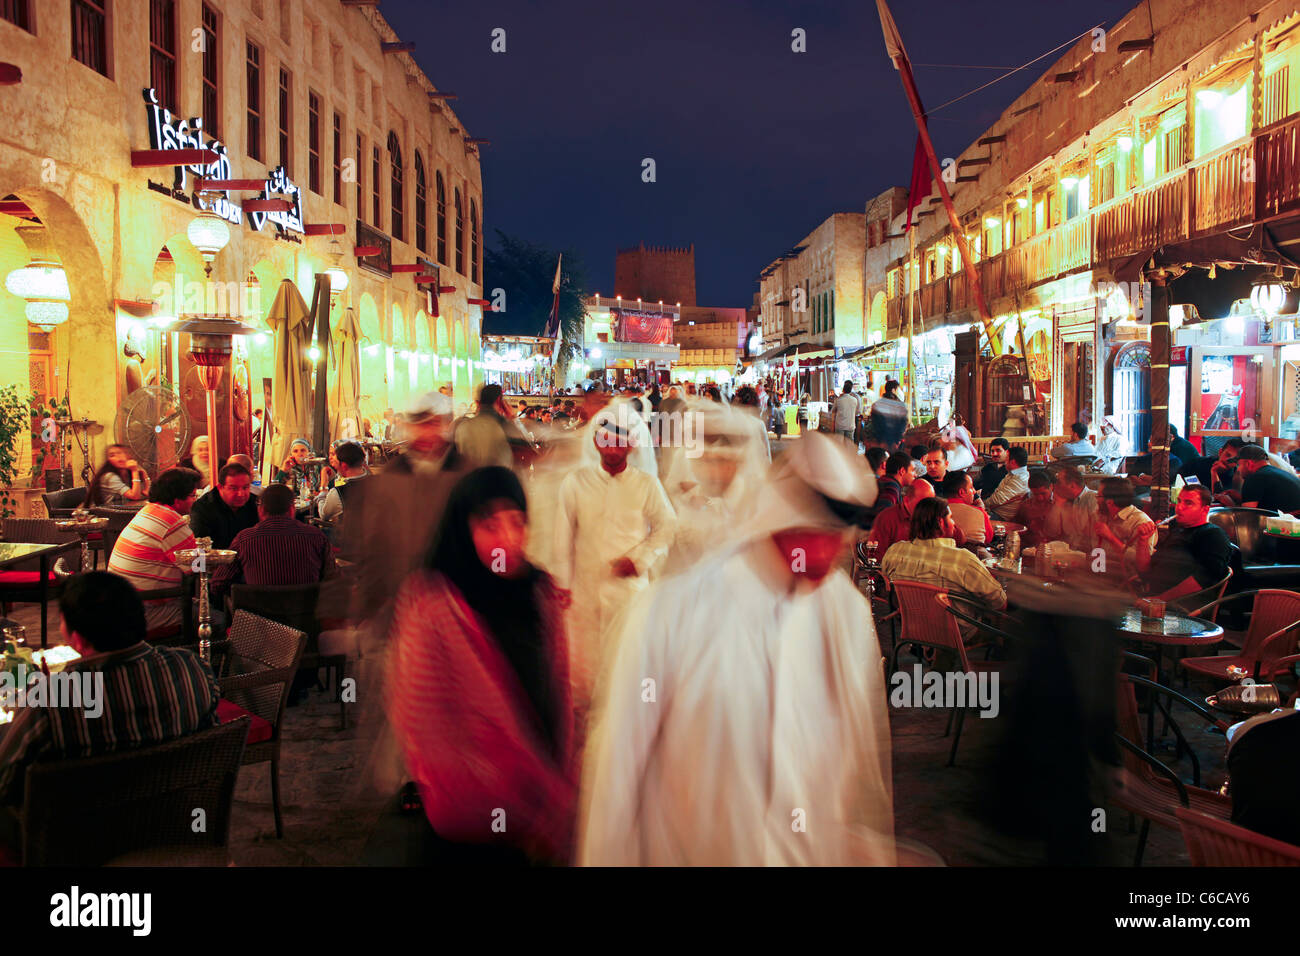 Il Qatar, il Medio Oriente e penisola arabica, Doha, il restaurato Souq Waqif con fango resi negozi e travi di legno a vista Foto Stock